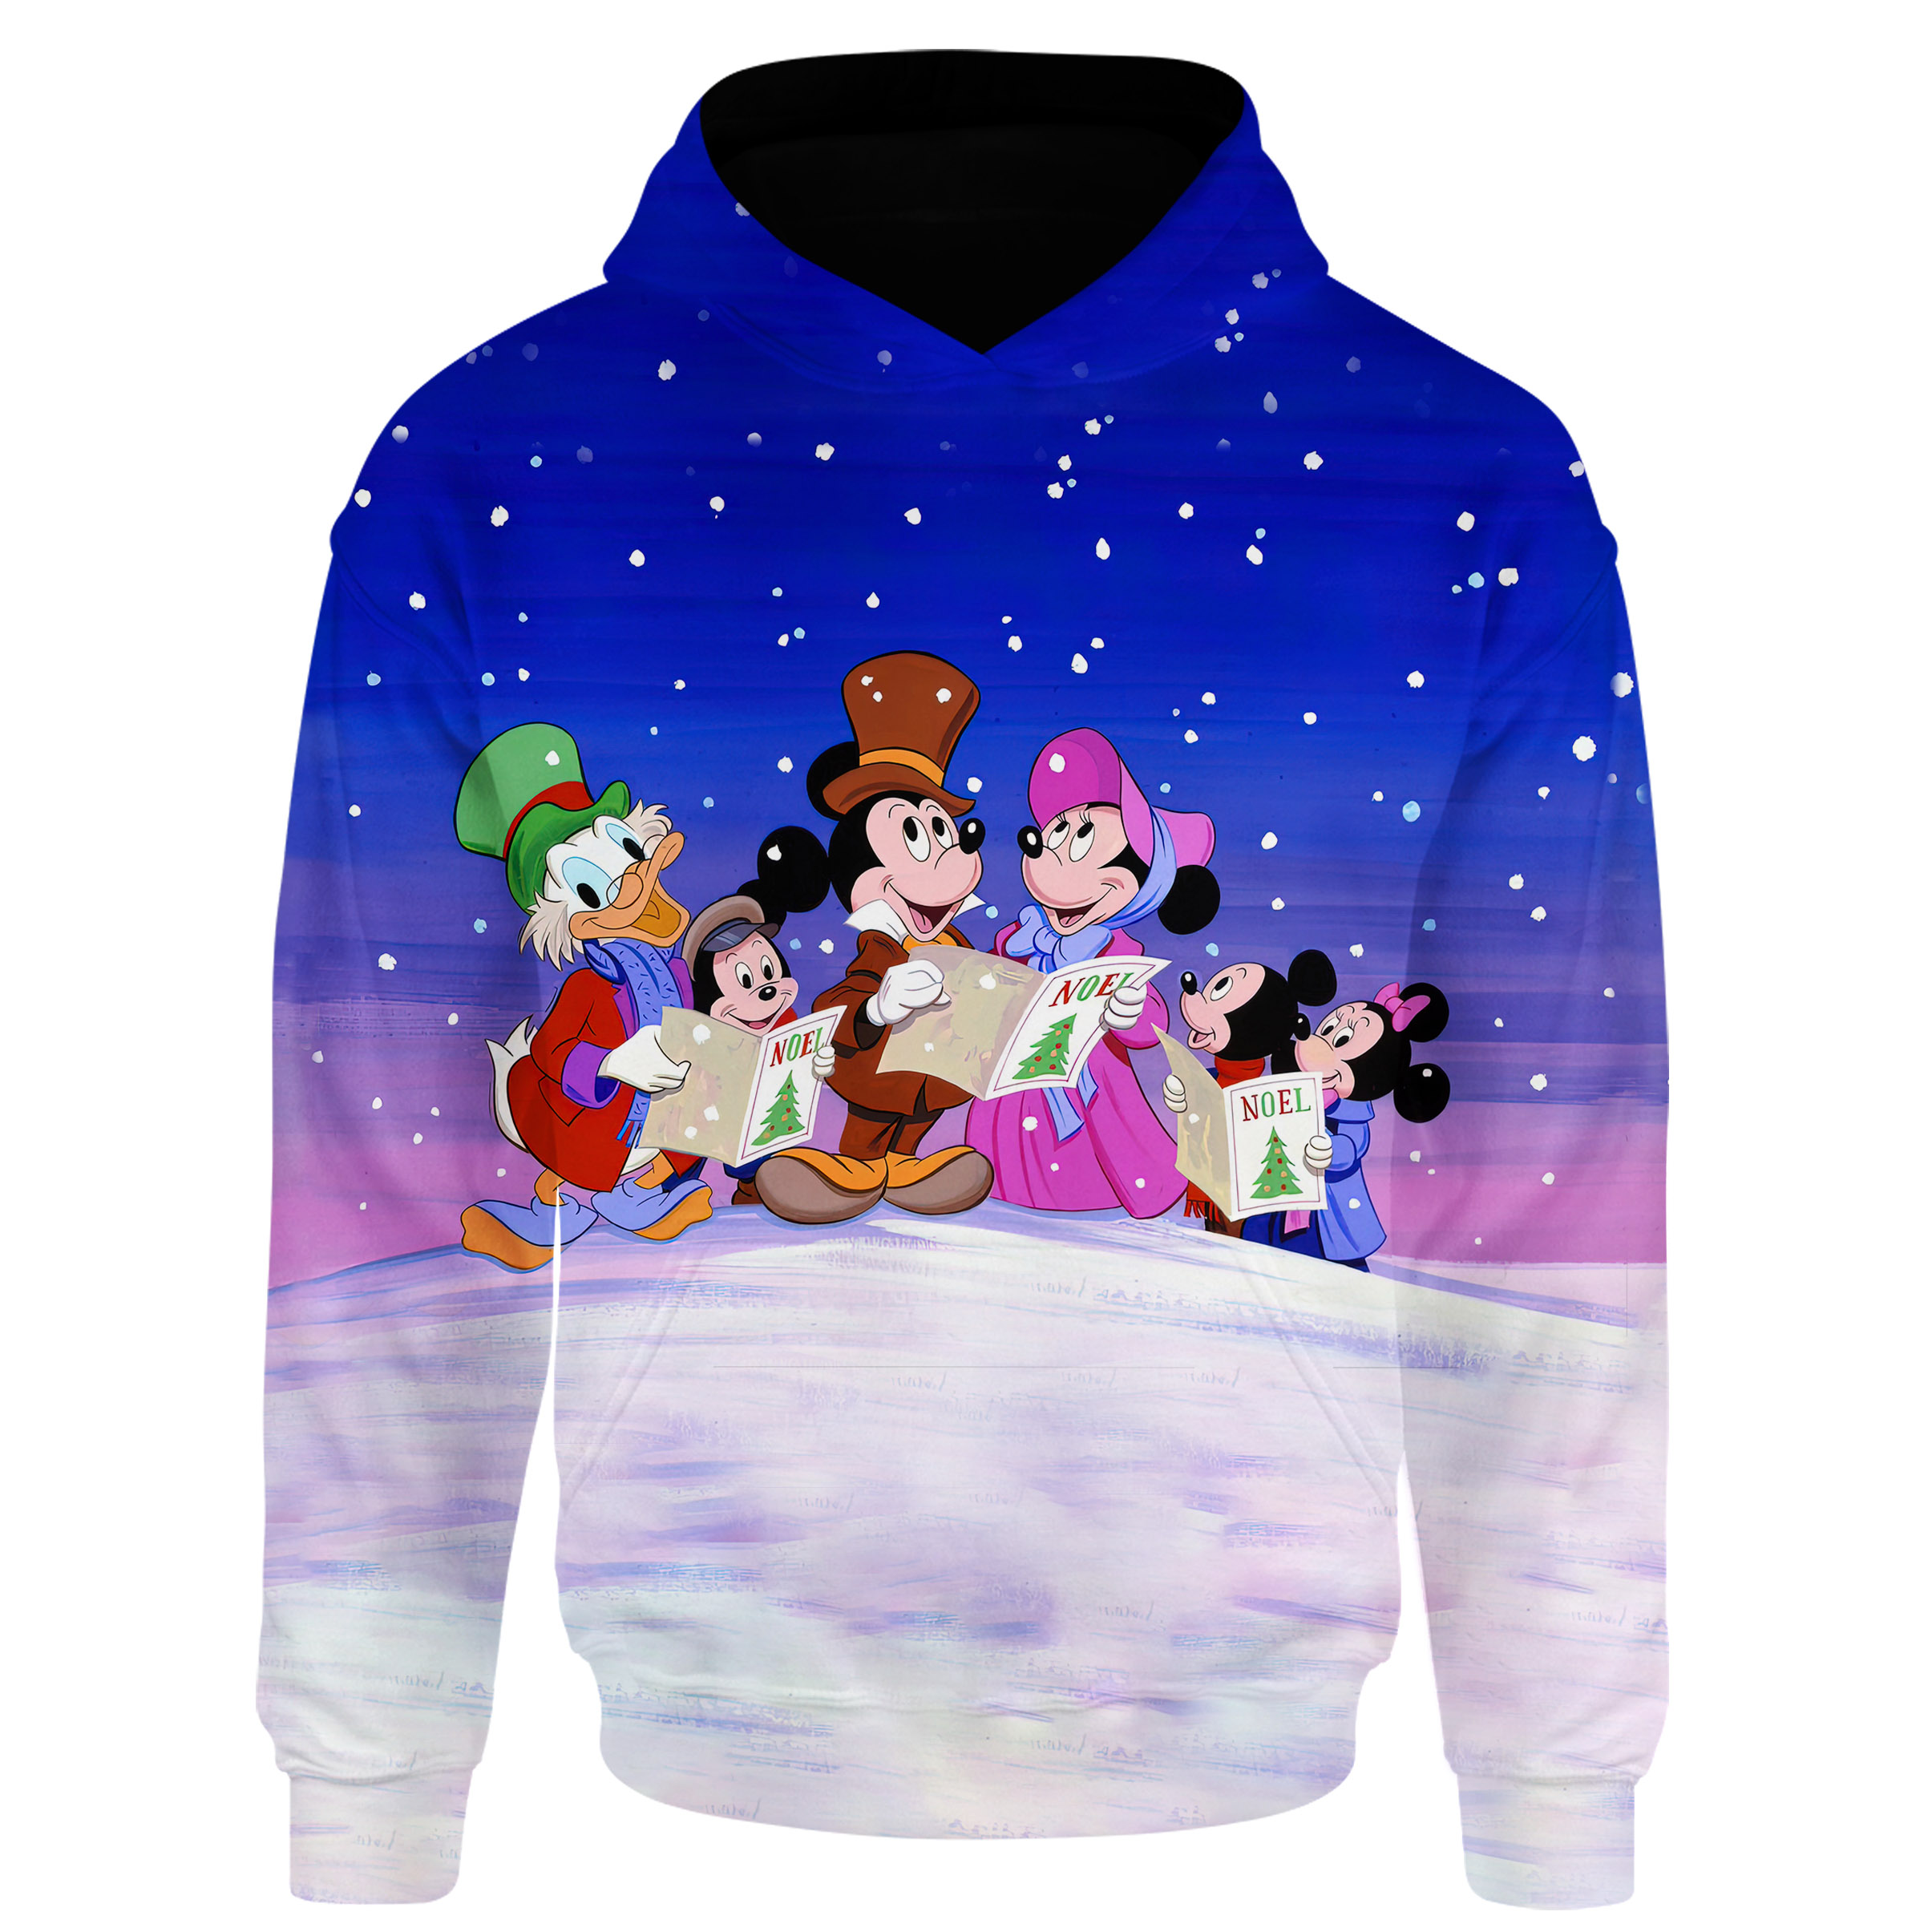 Disney Mickey Mouse S Christmas Carol Shirt All Over Print